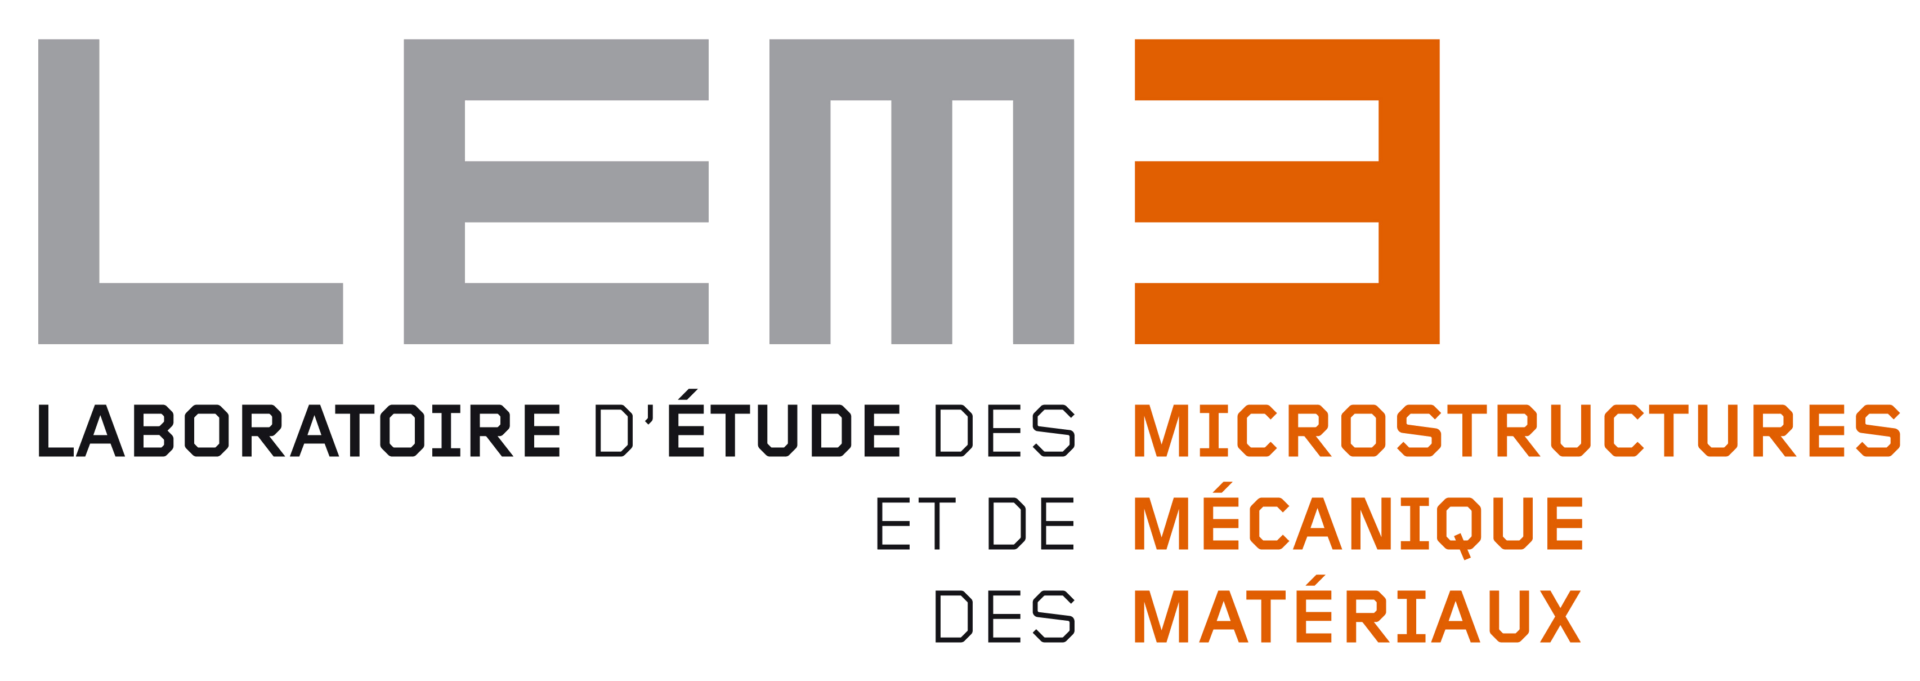 Logo du Laboratoire d'étude des microstructures et de mécanique des matériaux.